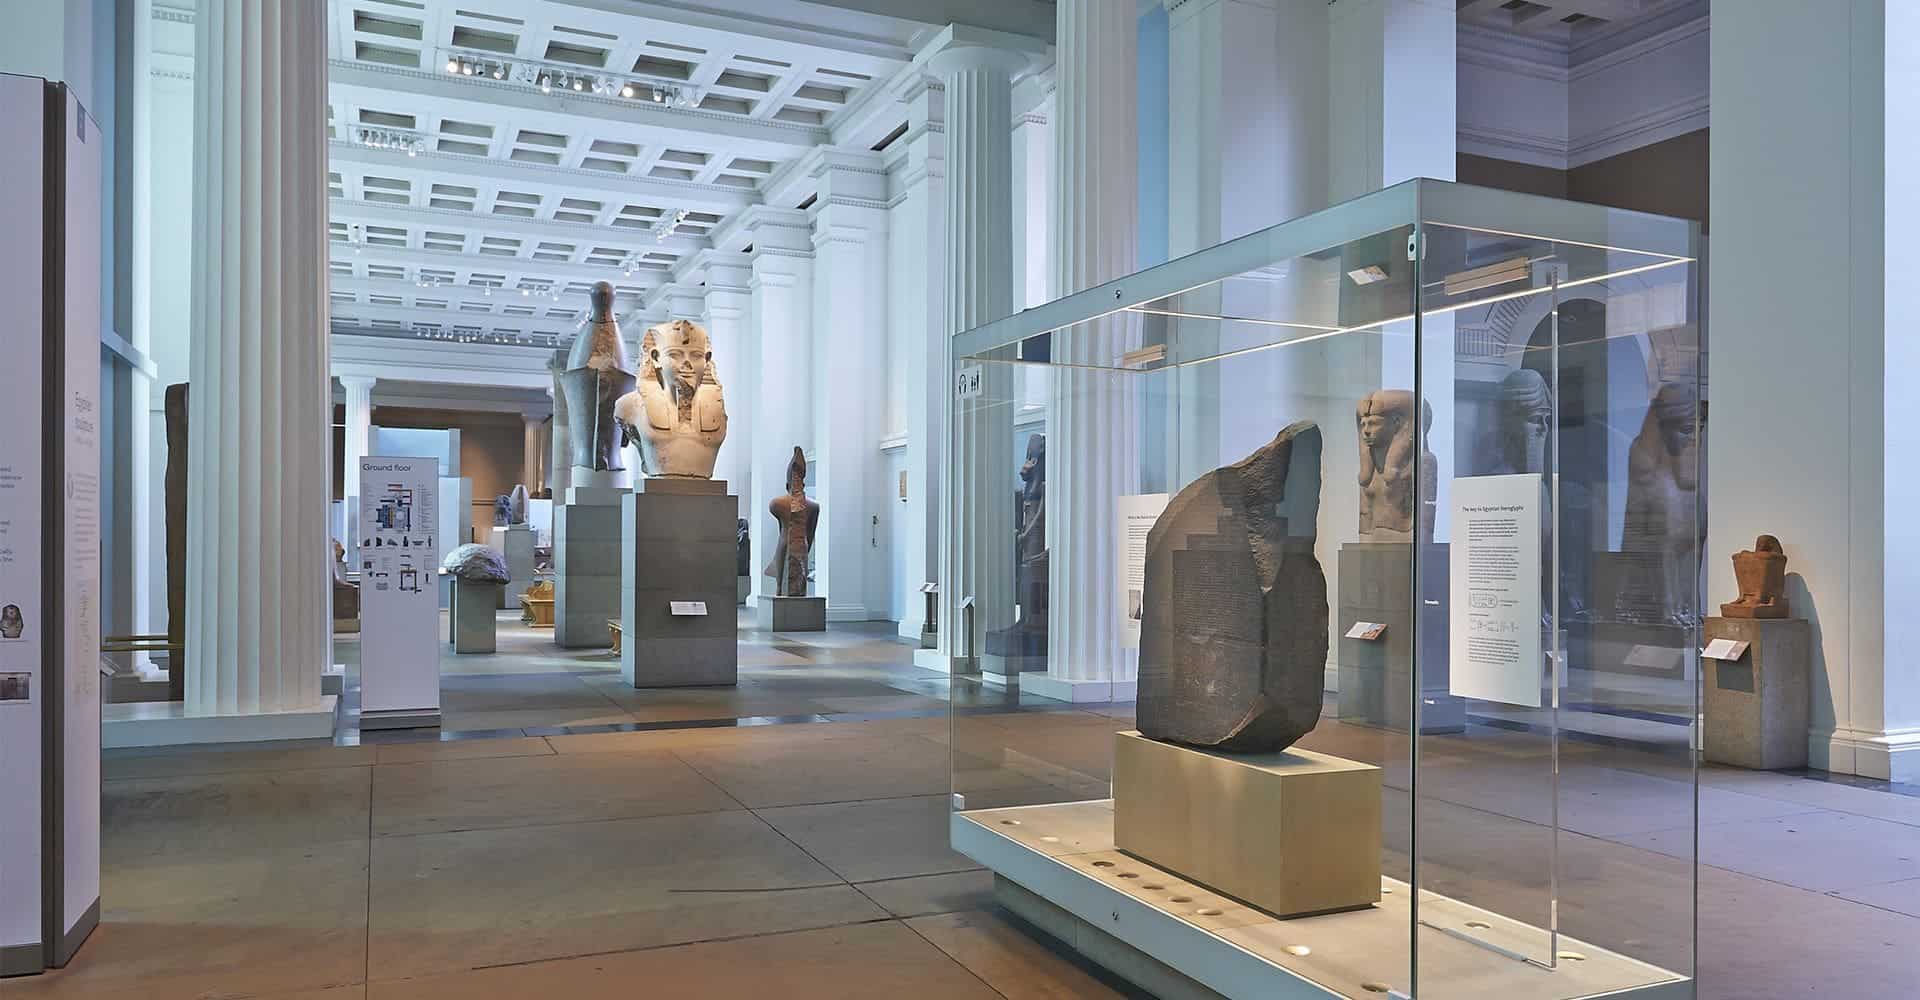 The British Museum in UK